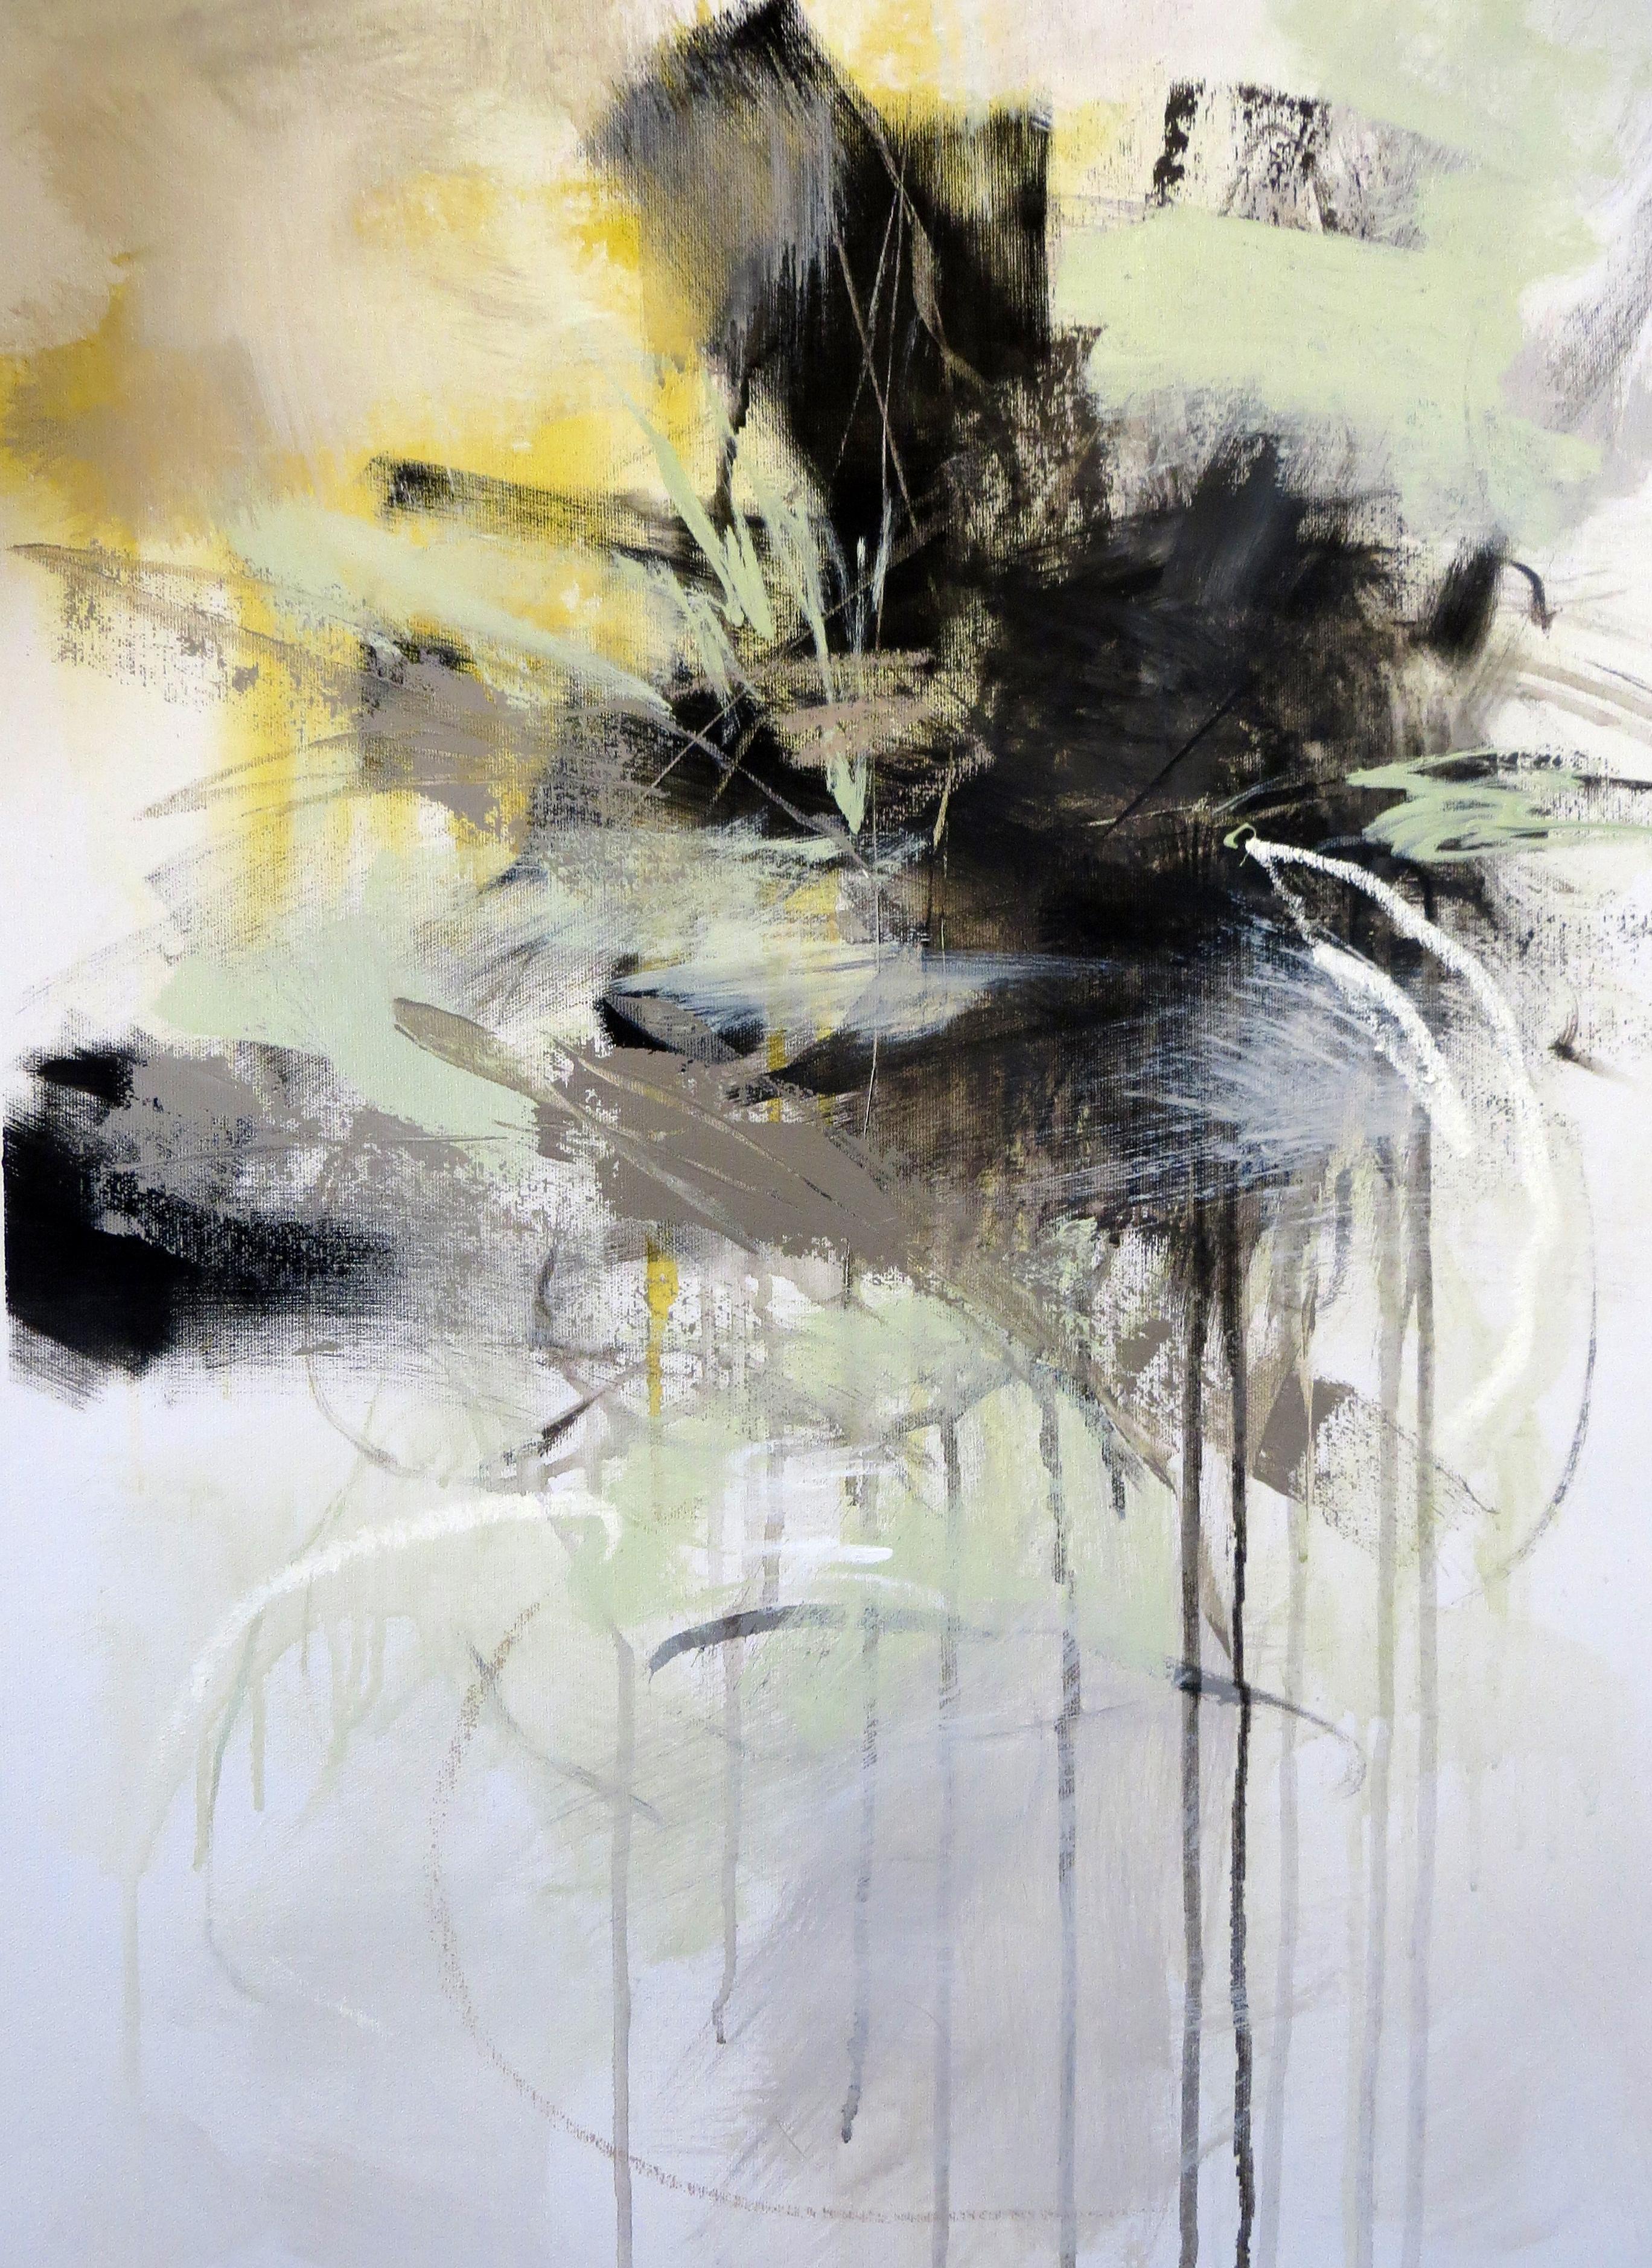 'Black and White 6' ist ein mittelgroßes botanisches abstraktes Gemälde in Acryl auf Leinwand, das die amerikanische Künstlerin Debora Stewart im Jahr 2019 geschaffen hat. Mit einer Palette aus Weiß, Schwarz, Grau, Gelb und zartem Grün ist das